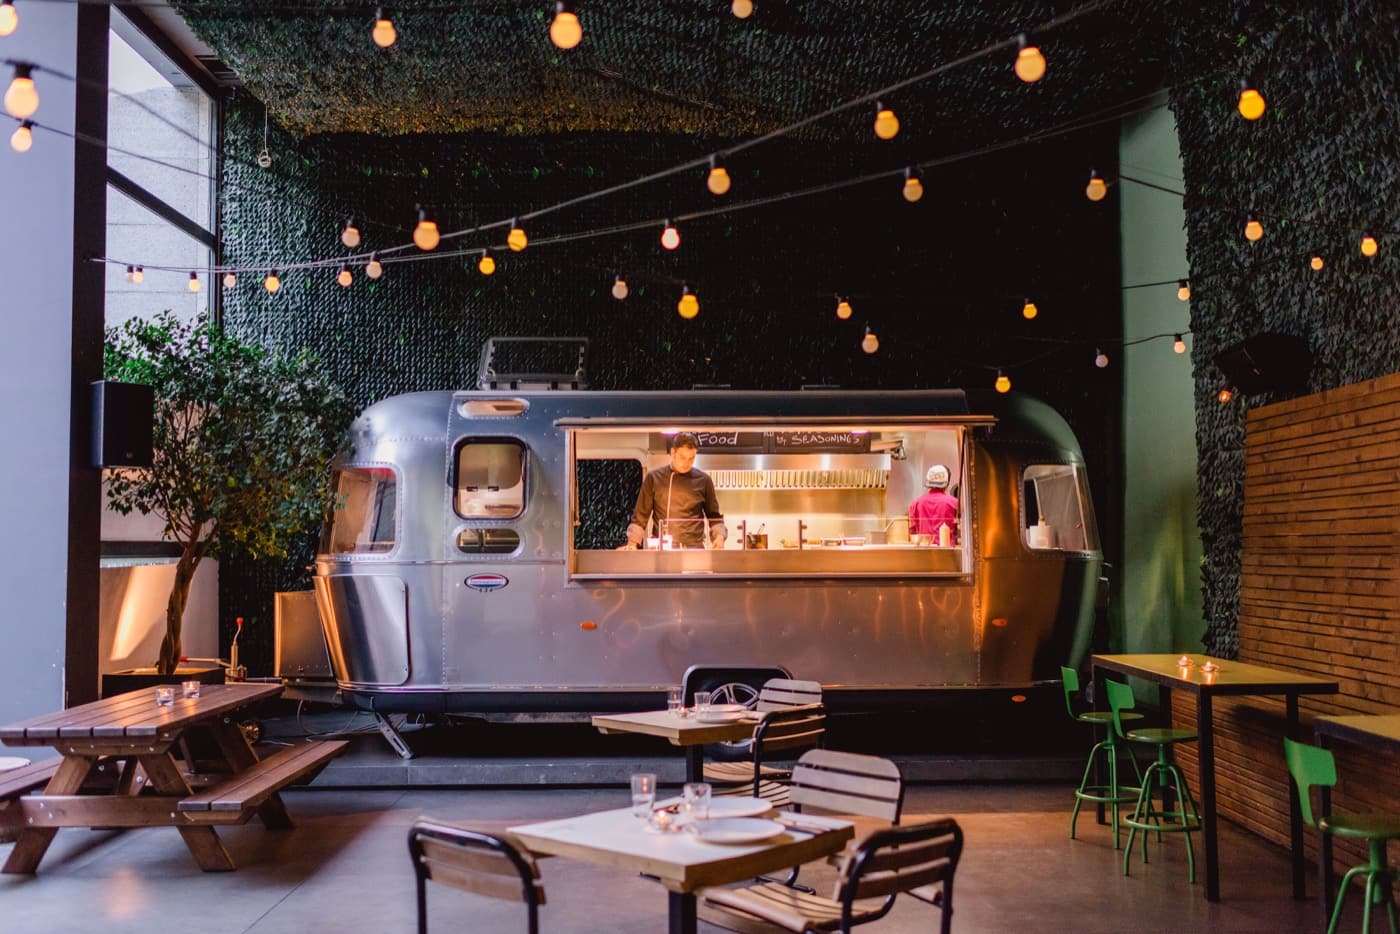 Food Truck Instagram Tips